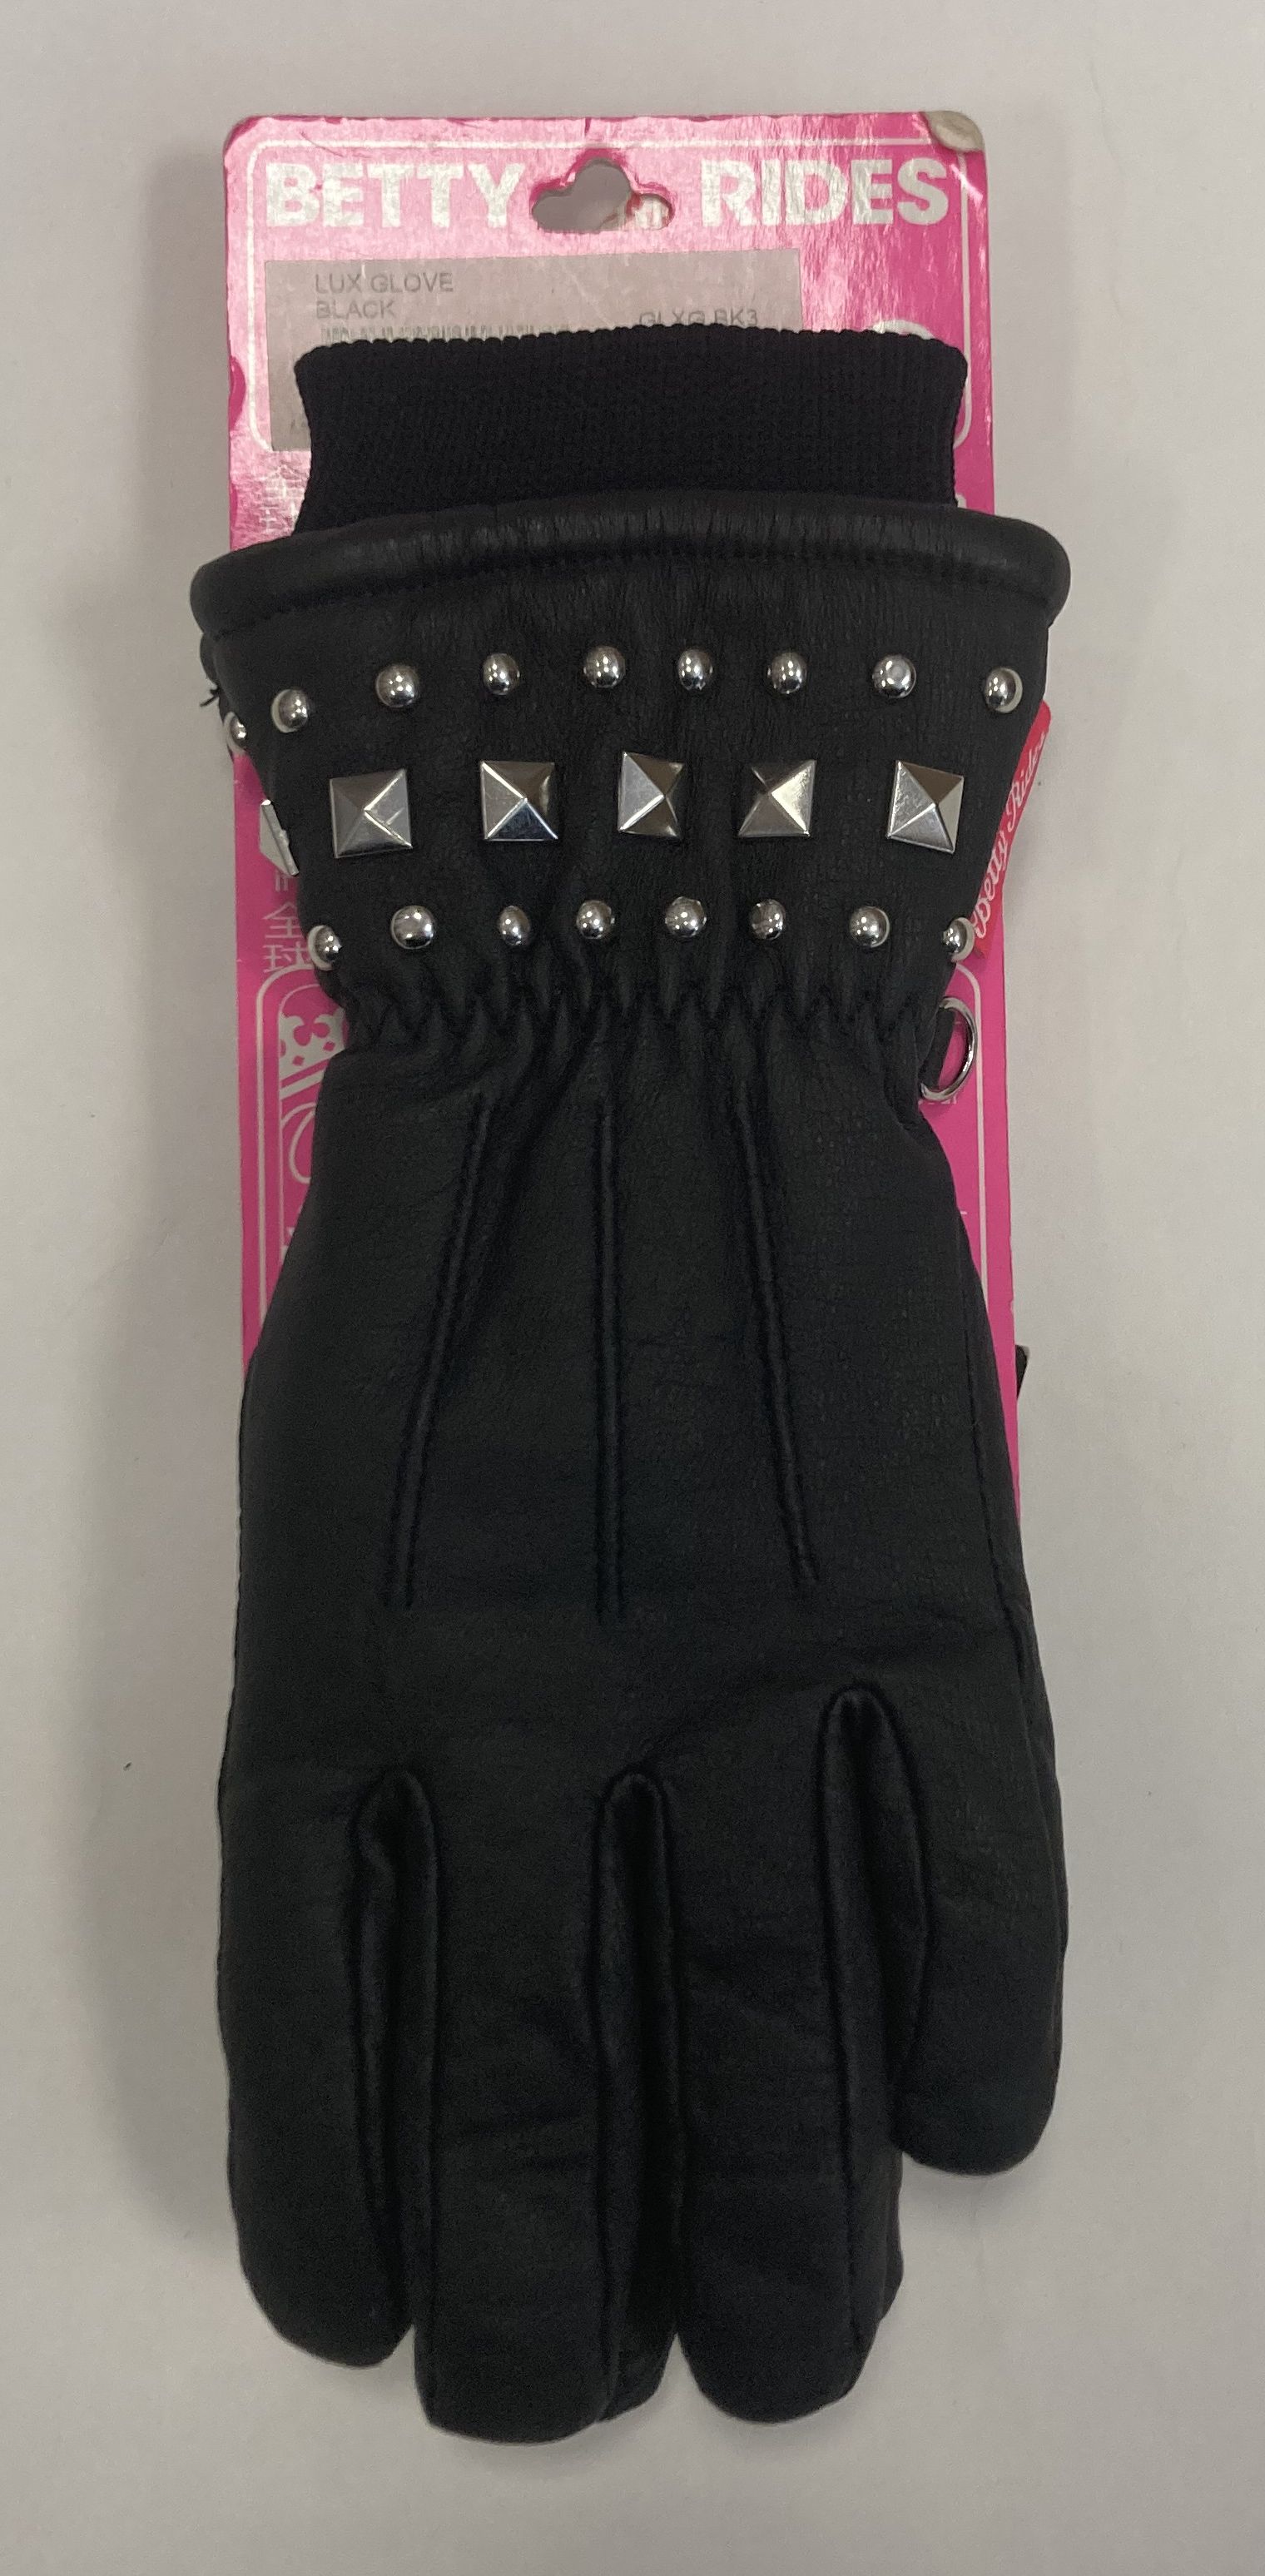 dámské rukavice BETTY RIDES Lux glove black